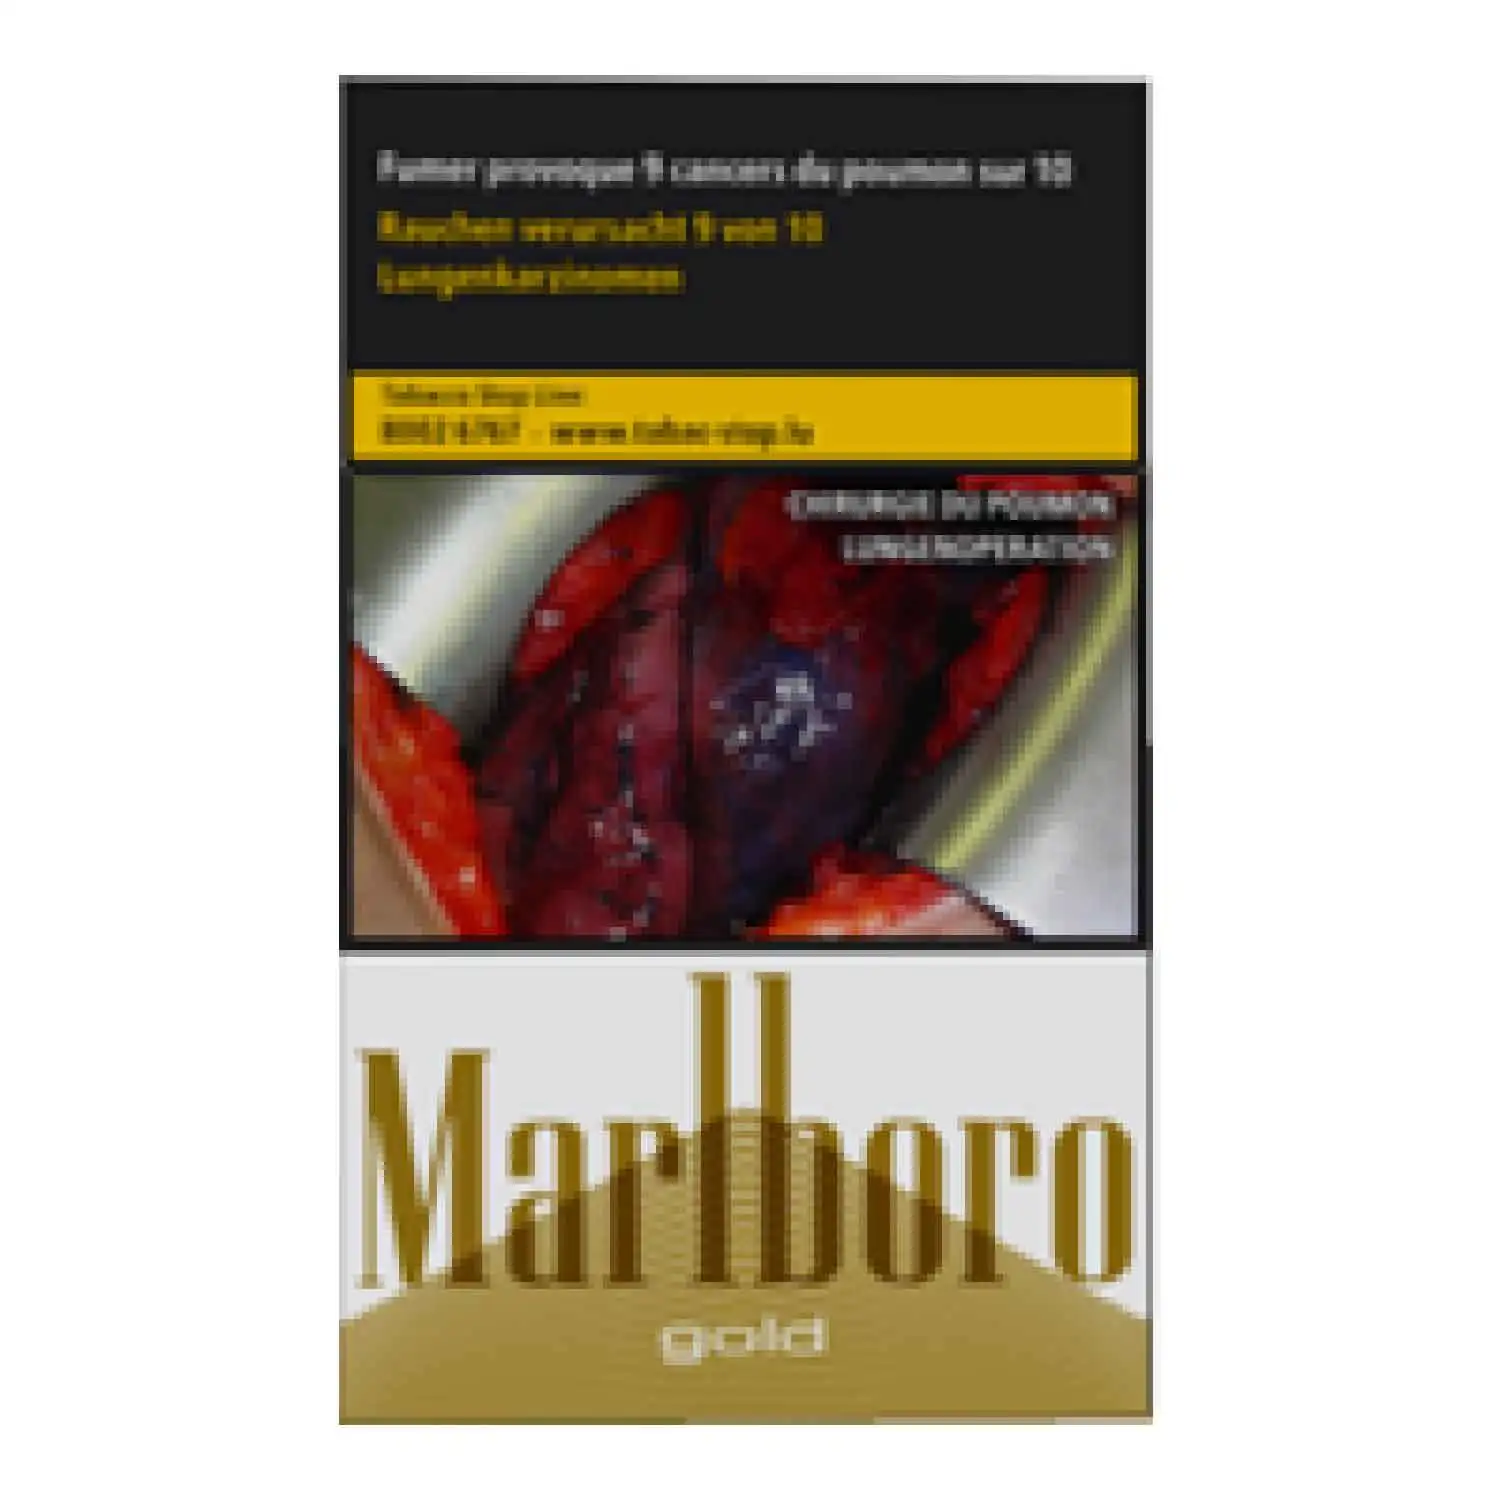 Marlboro gold 20 - Buy at Real Tobacco